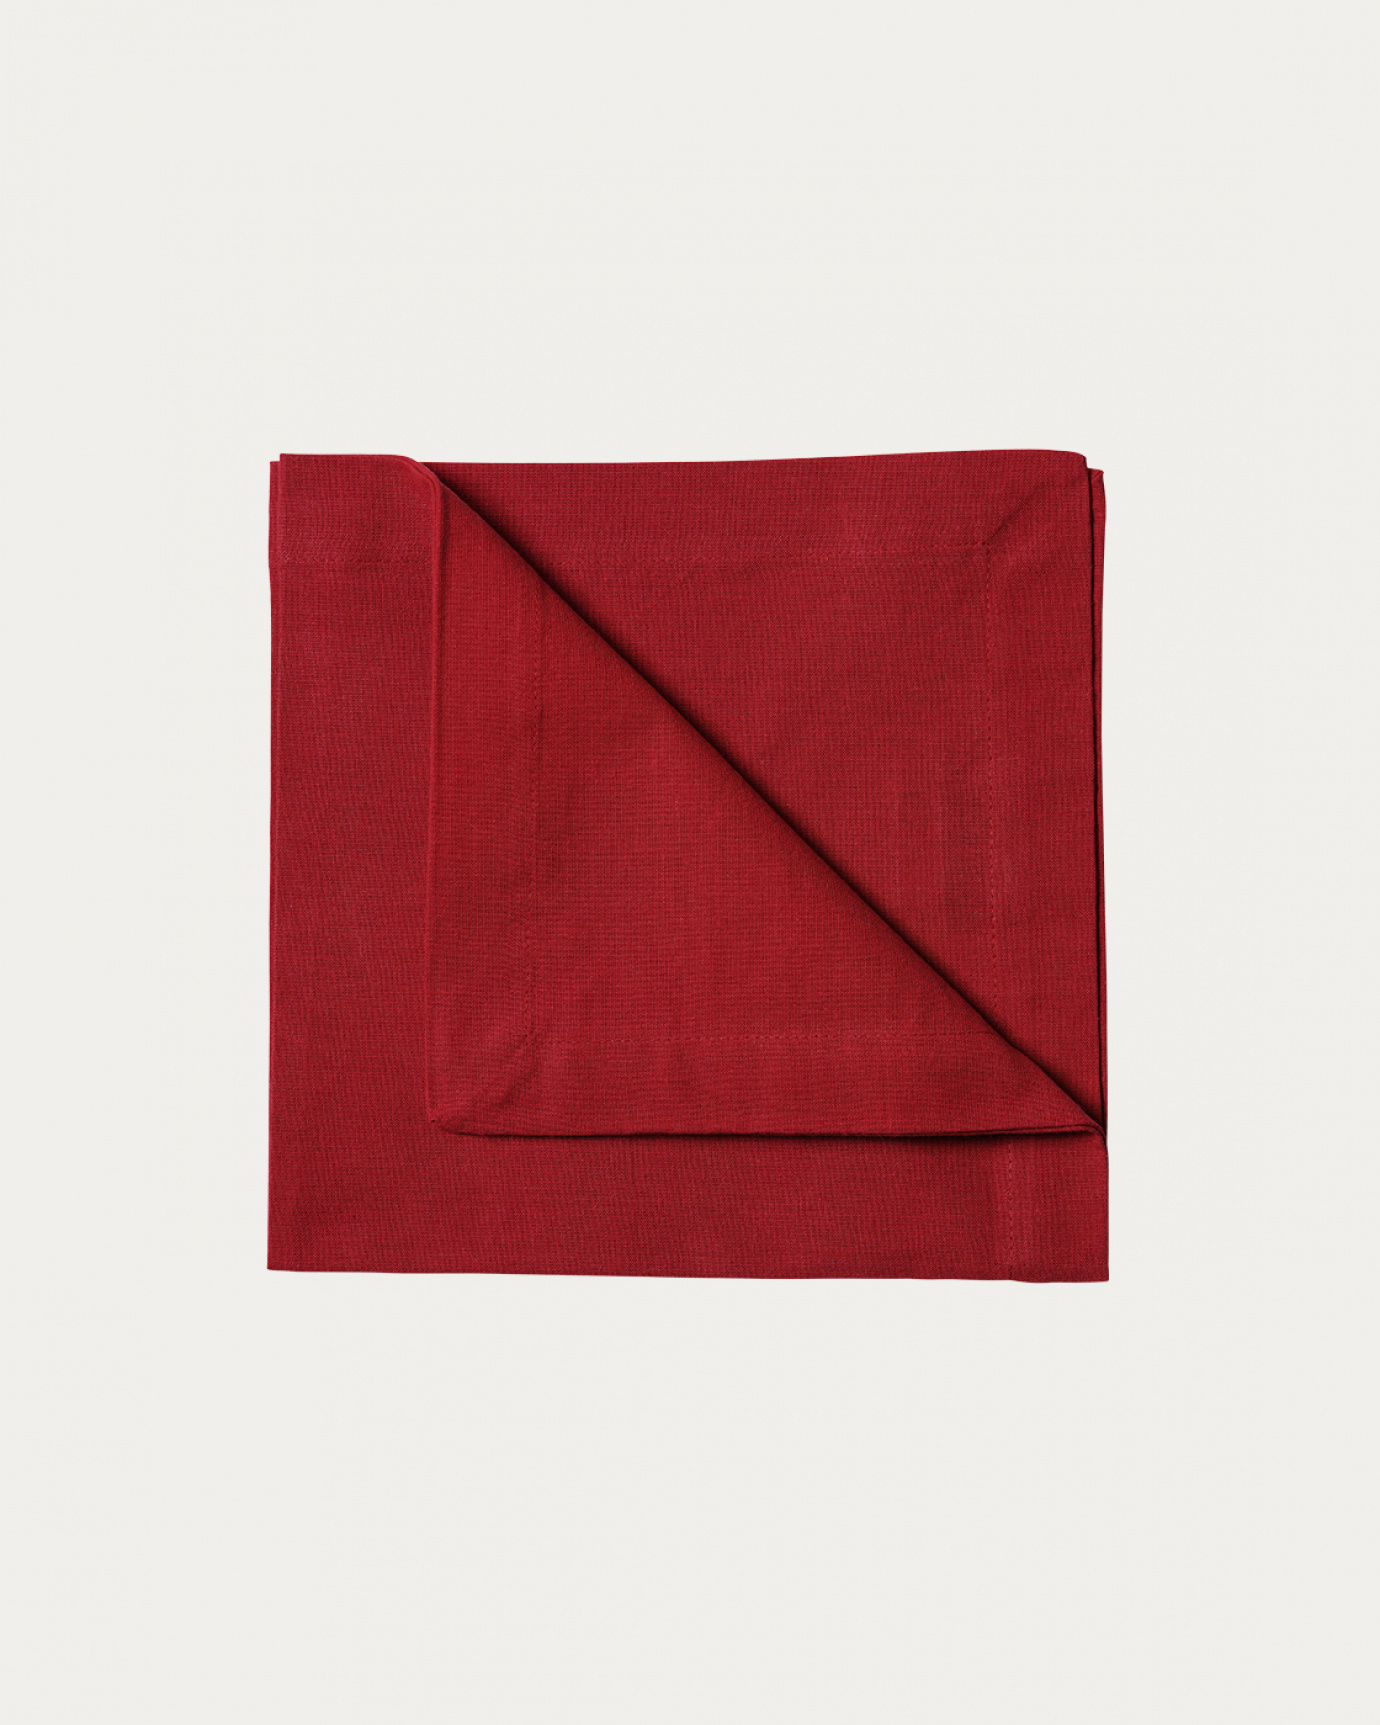 Image du produit serviette de table ROBERT rouge en coton doux de LINUM DESIGN. Taille 45 x 45 cm et vendu en lot de 4.